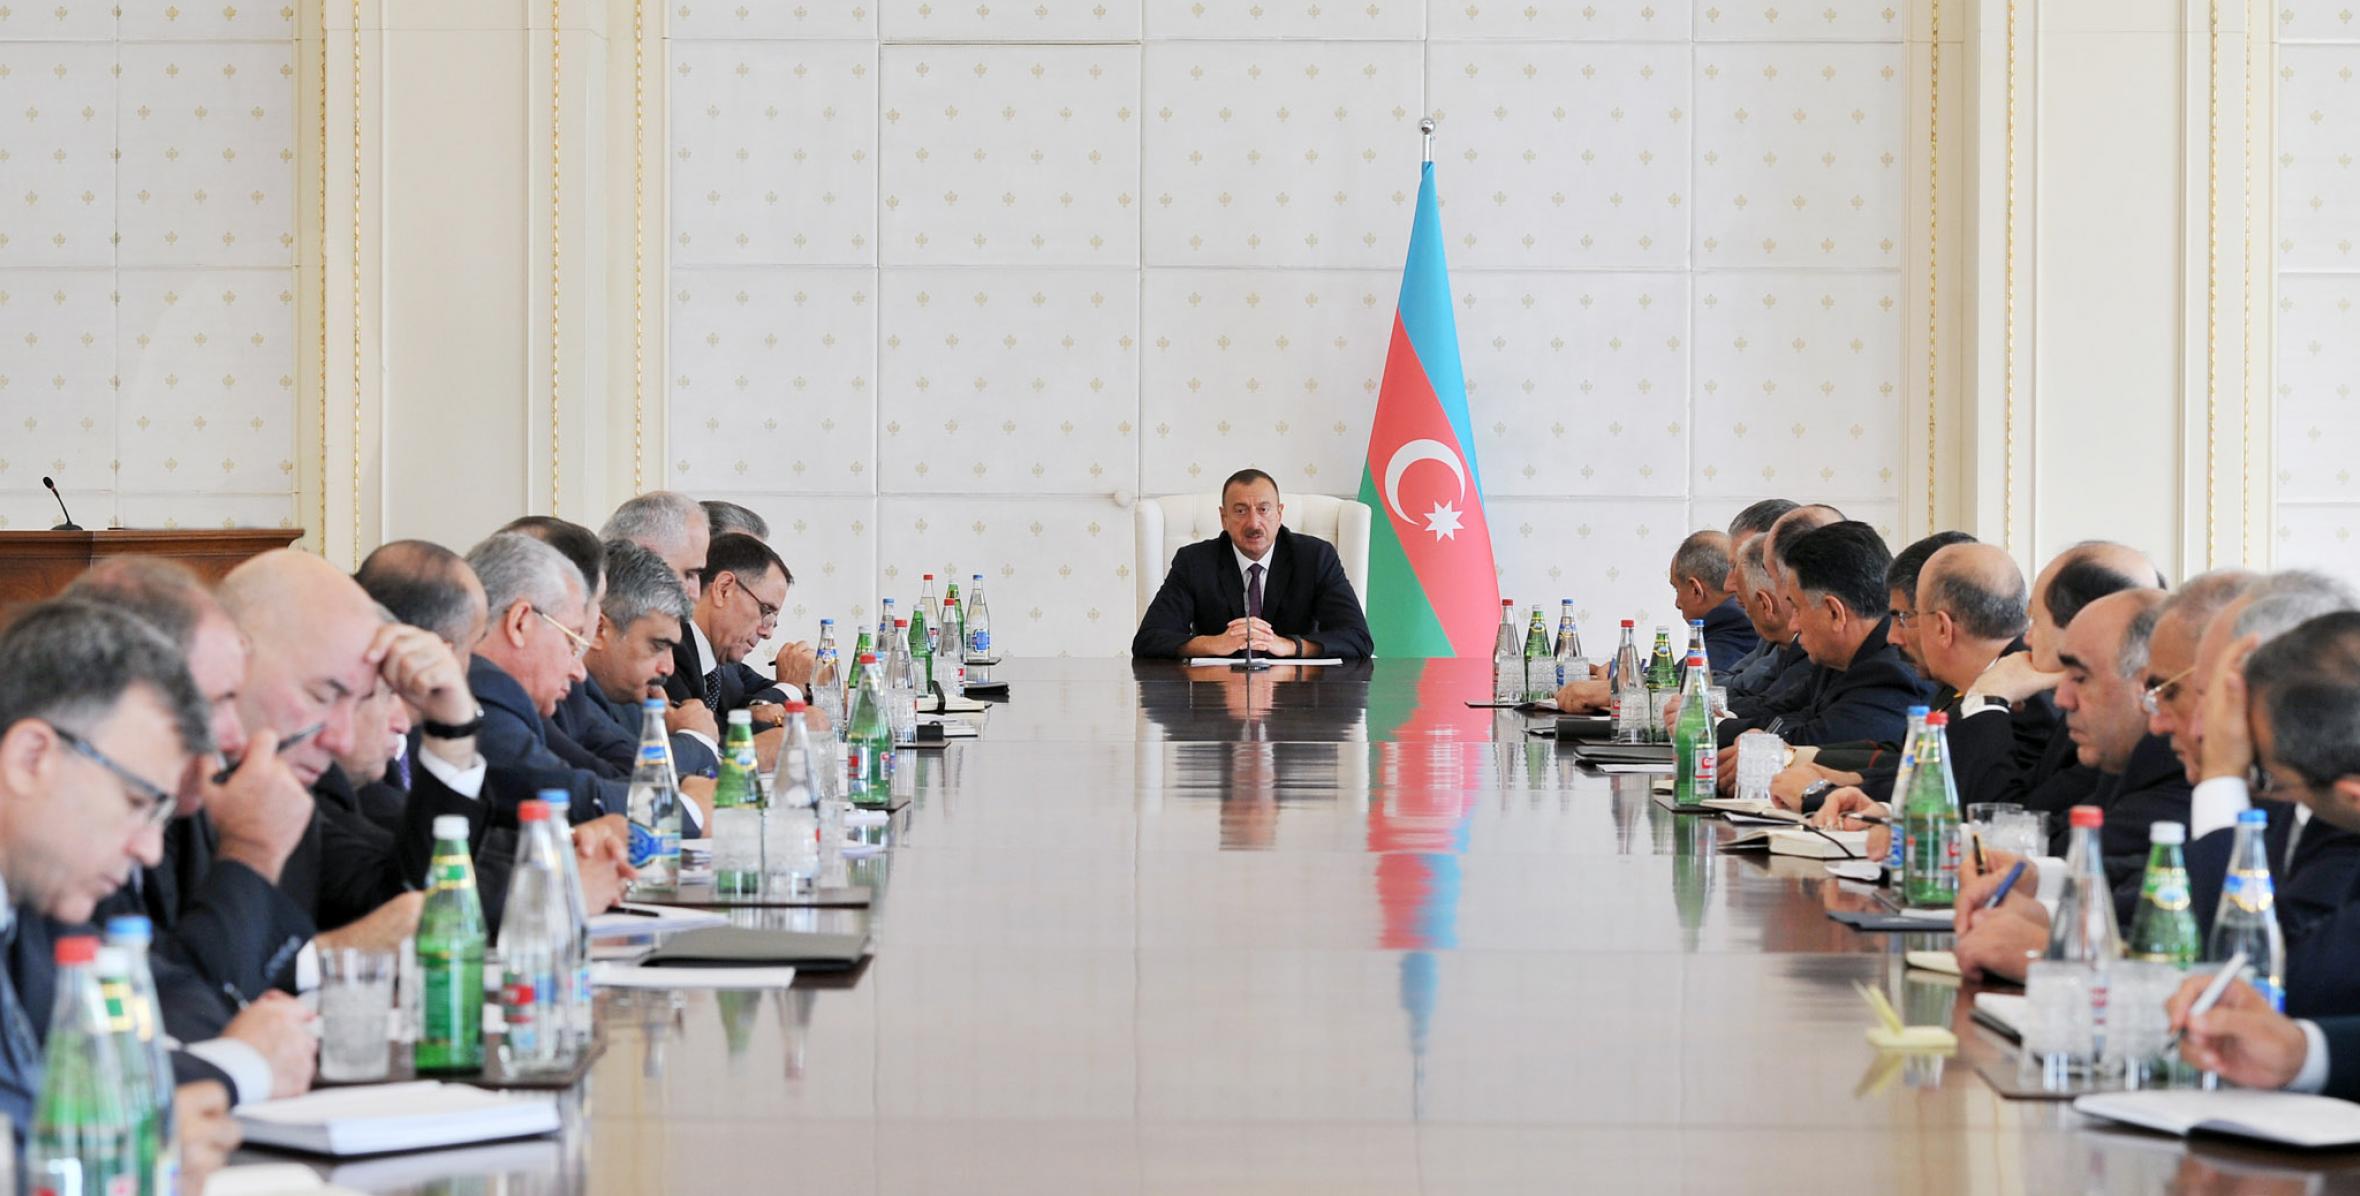 Заключительная речь Ильхама Алиева на заседании Кабинета Министров, посвященном итогам социально-экономического развития в первой половине 2014 года и предстоящим задачам